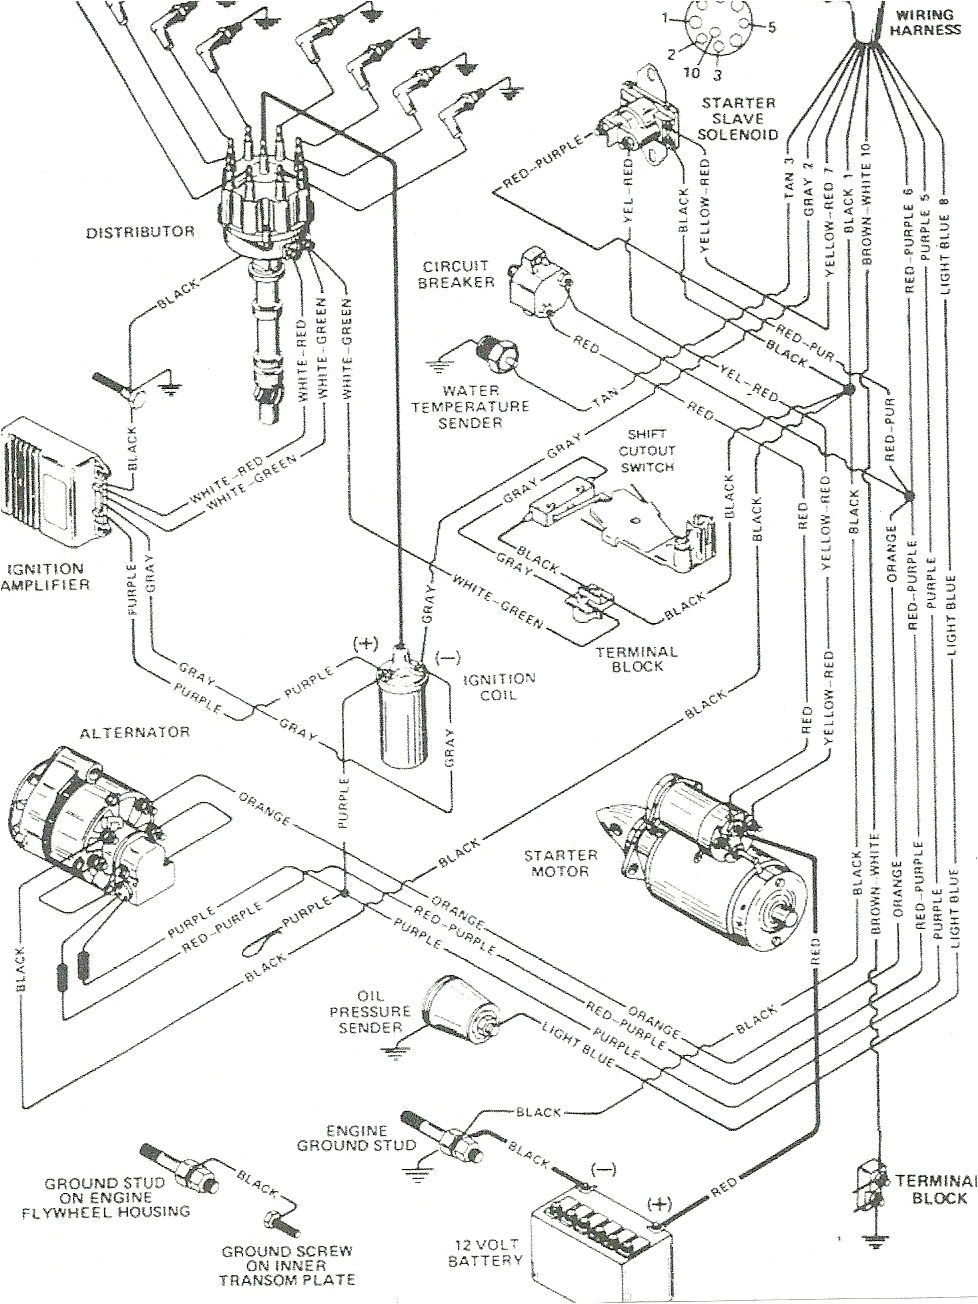 mercruiser 30 wiring diagram wiring diagram mercruiser 140mercruiser 30 wiring diagram wiring diagram